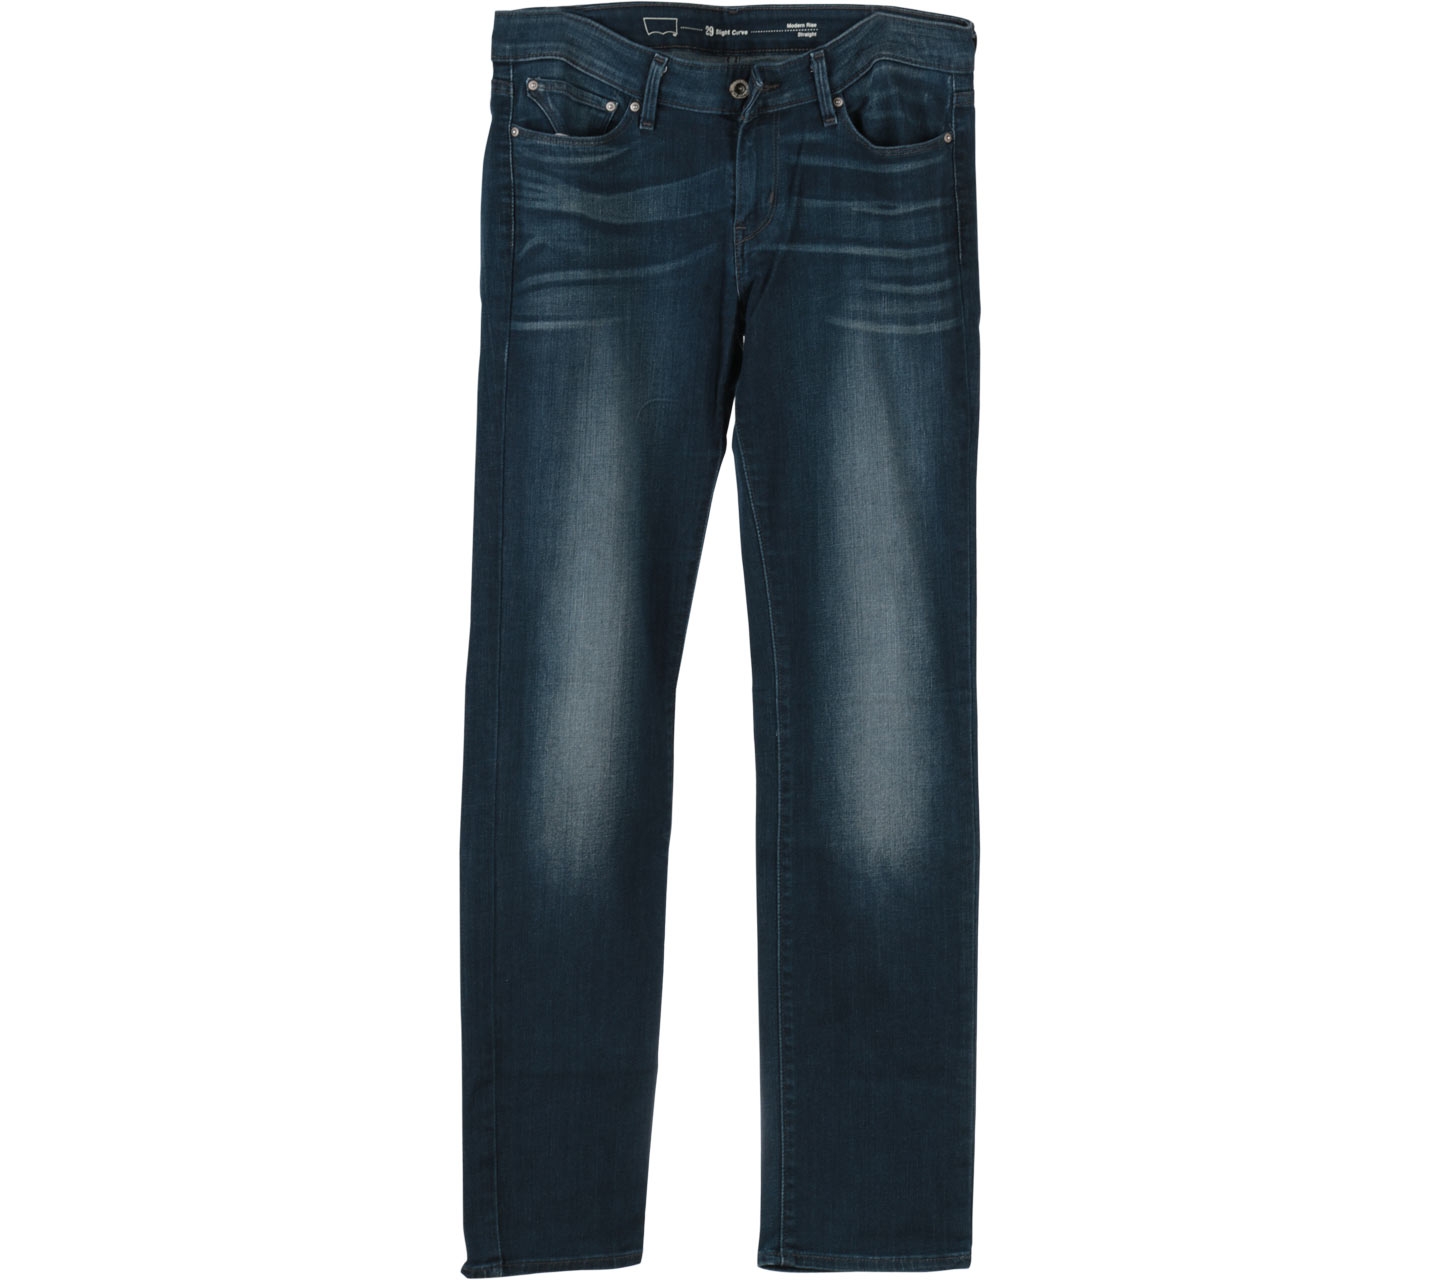 Levi's Blue Straight Jeans Pants